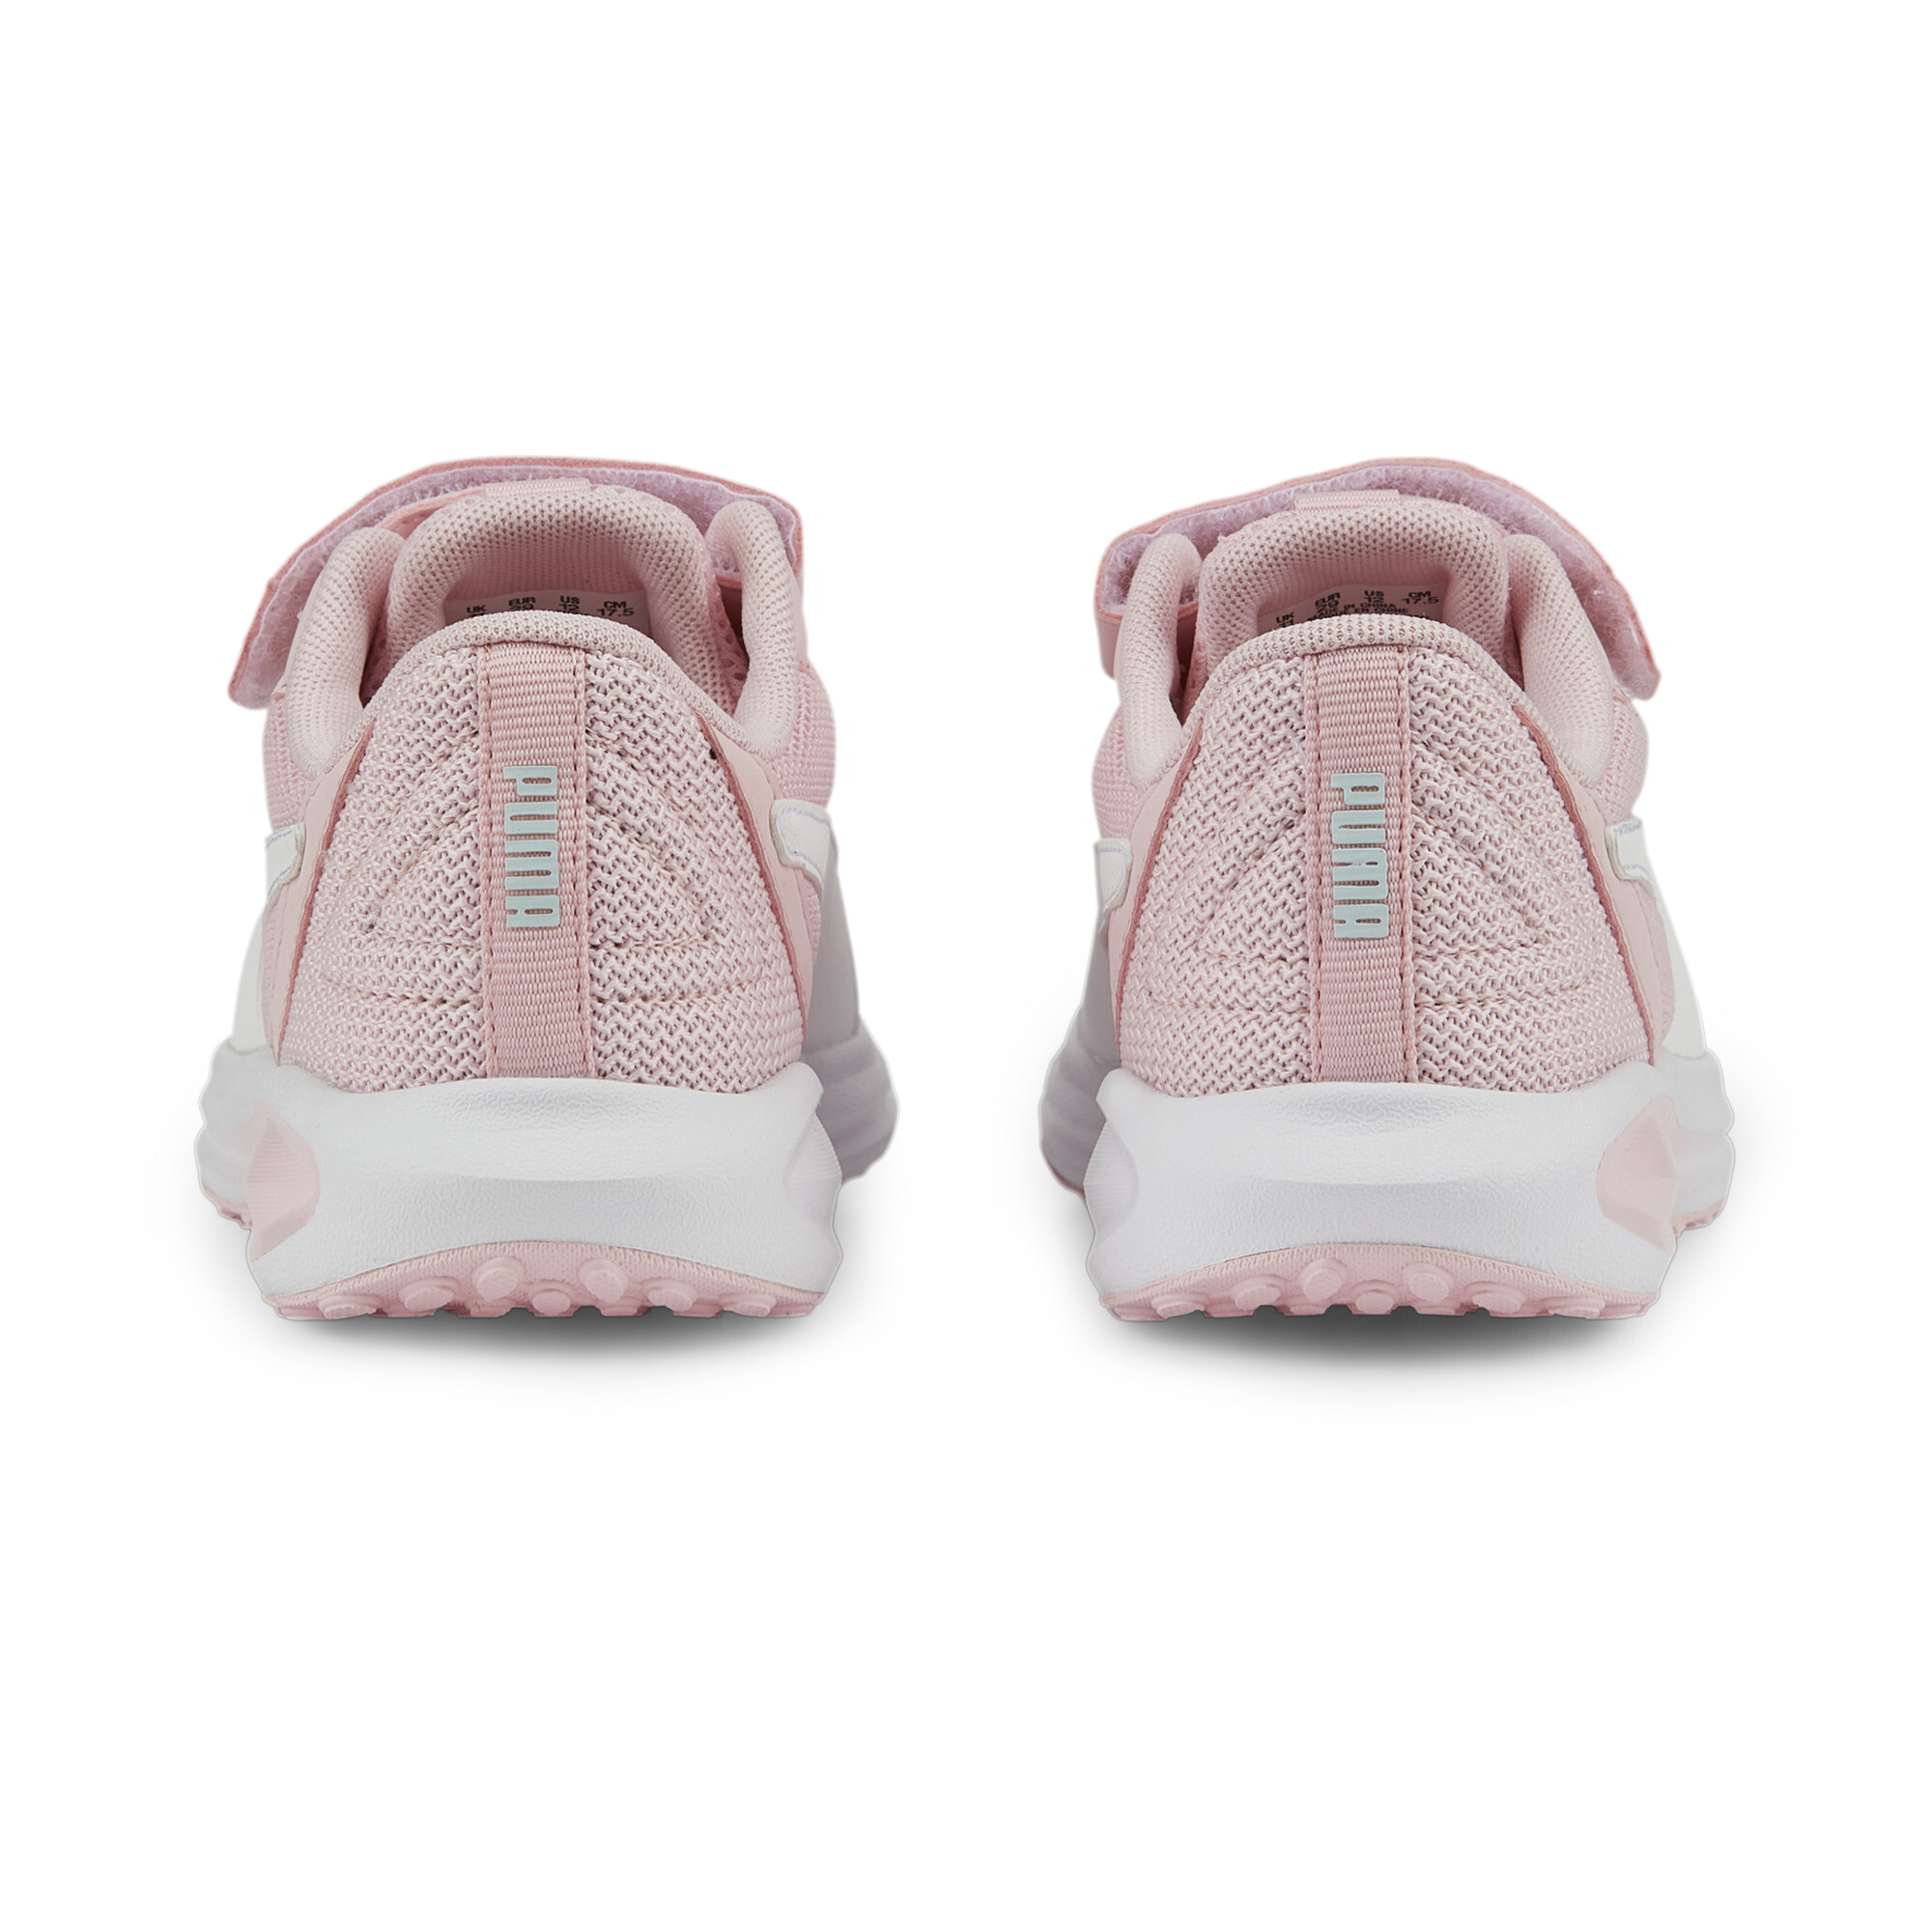 PUMA Twitch Runner Mutant Alternative Closure Sneakers Kids In Pink, Size EU 34.5